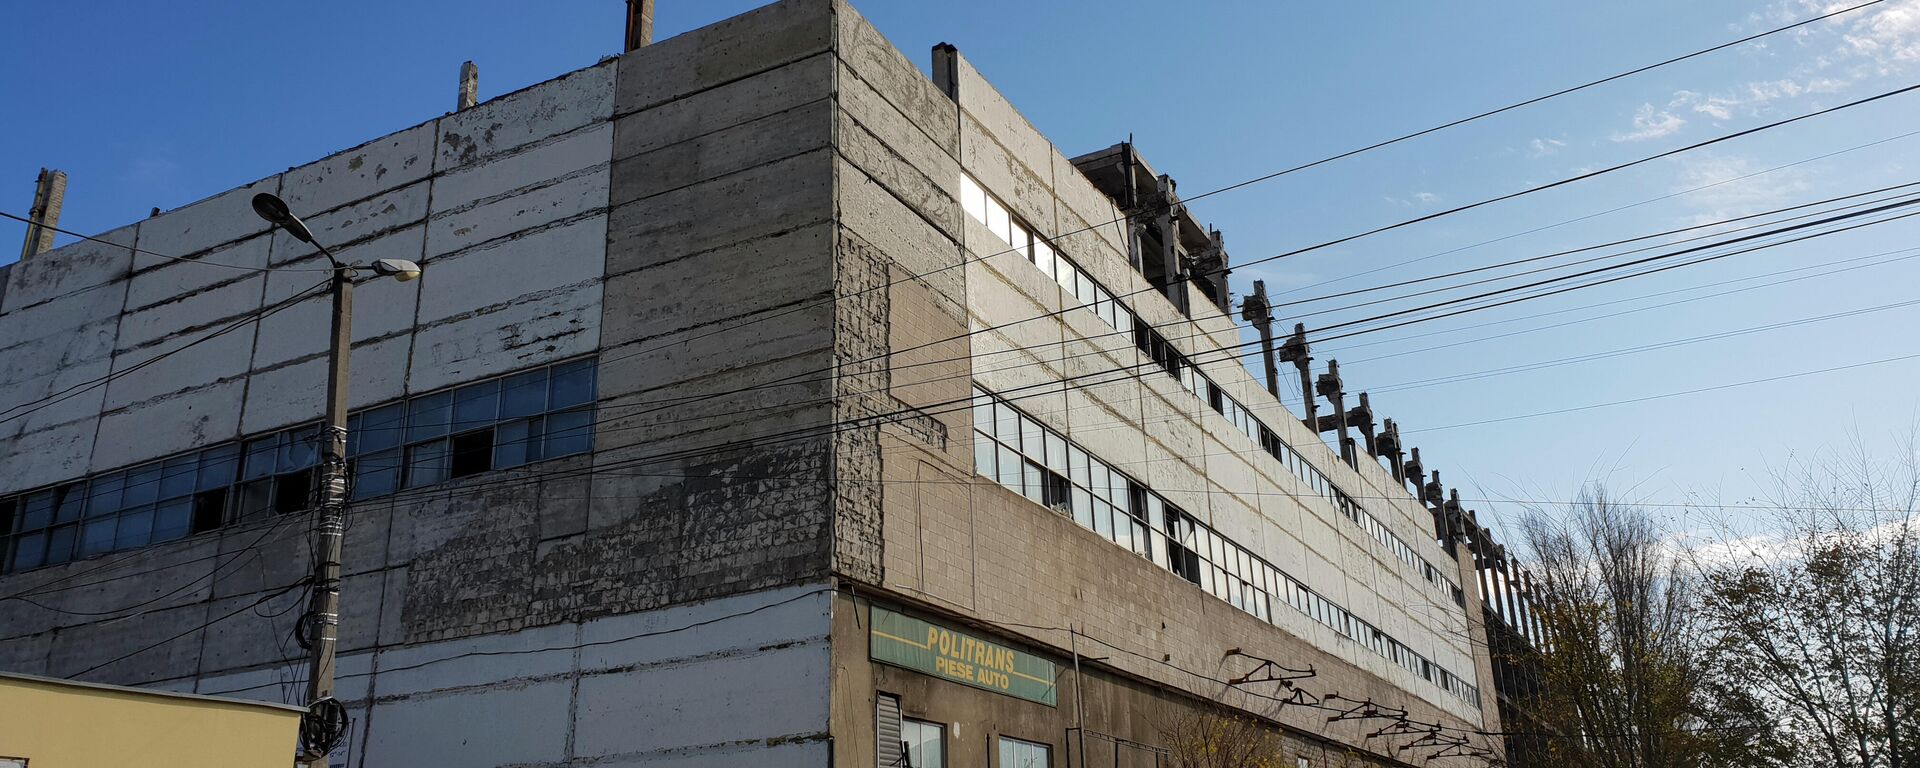 Здание горевшего склада на улице Узинелор в Кишиневе - Sputnik Молдова, 1920, 11.11.2021